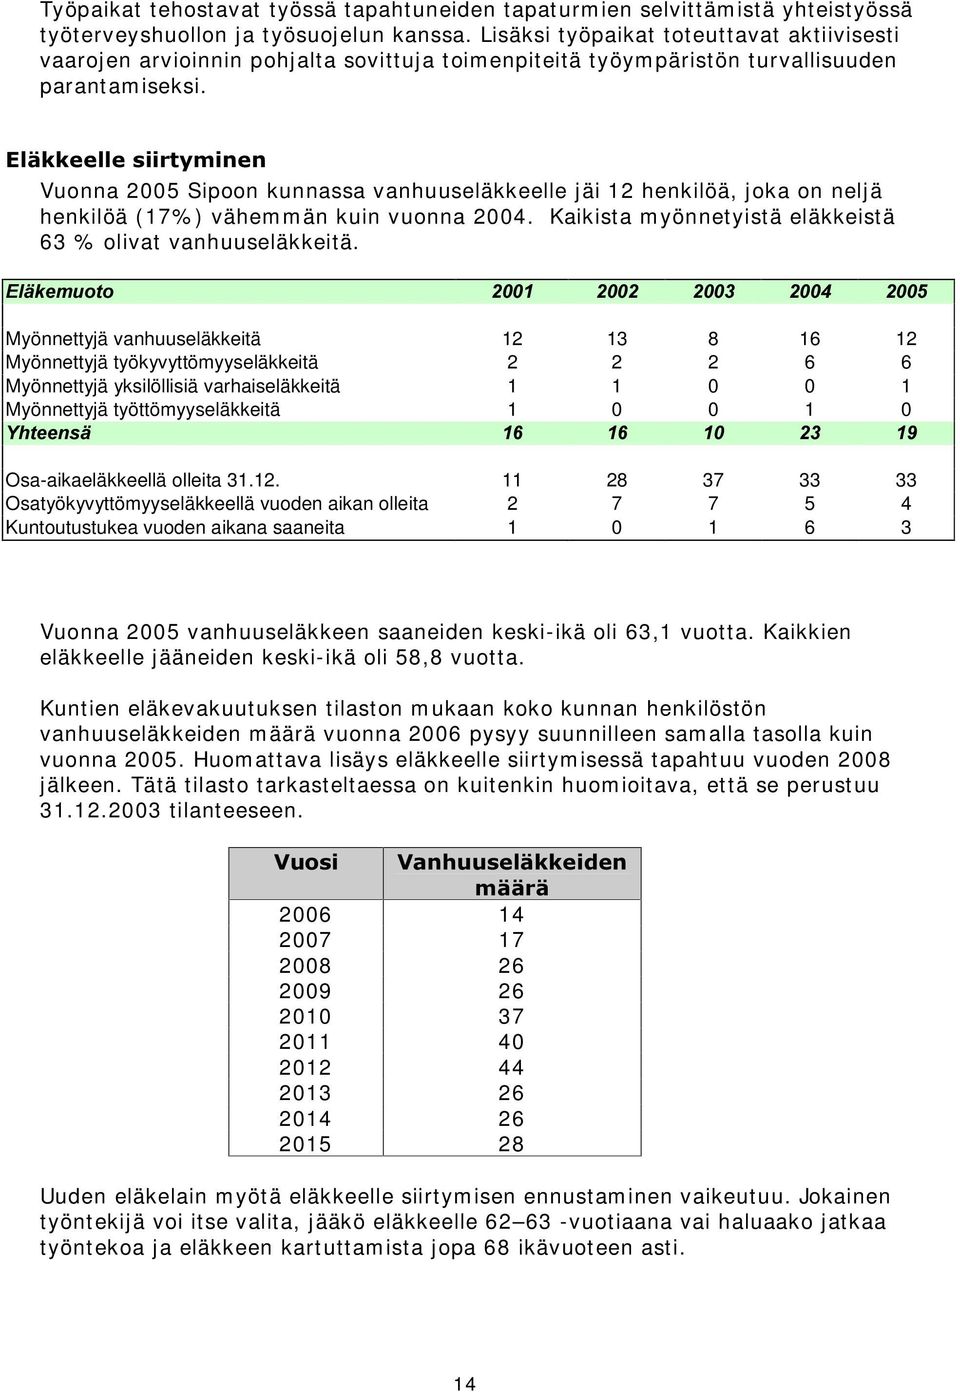 (OlNNHHOOHVLLUW\PLQHQ Vuonna 2005 Sipoon kunnassa vanhuuseläkkeelle jäi 12 henkilöä, joka on neljä henkilöä (17% ) vähemmän kuin vuonna 2004.